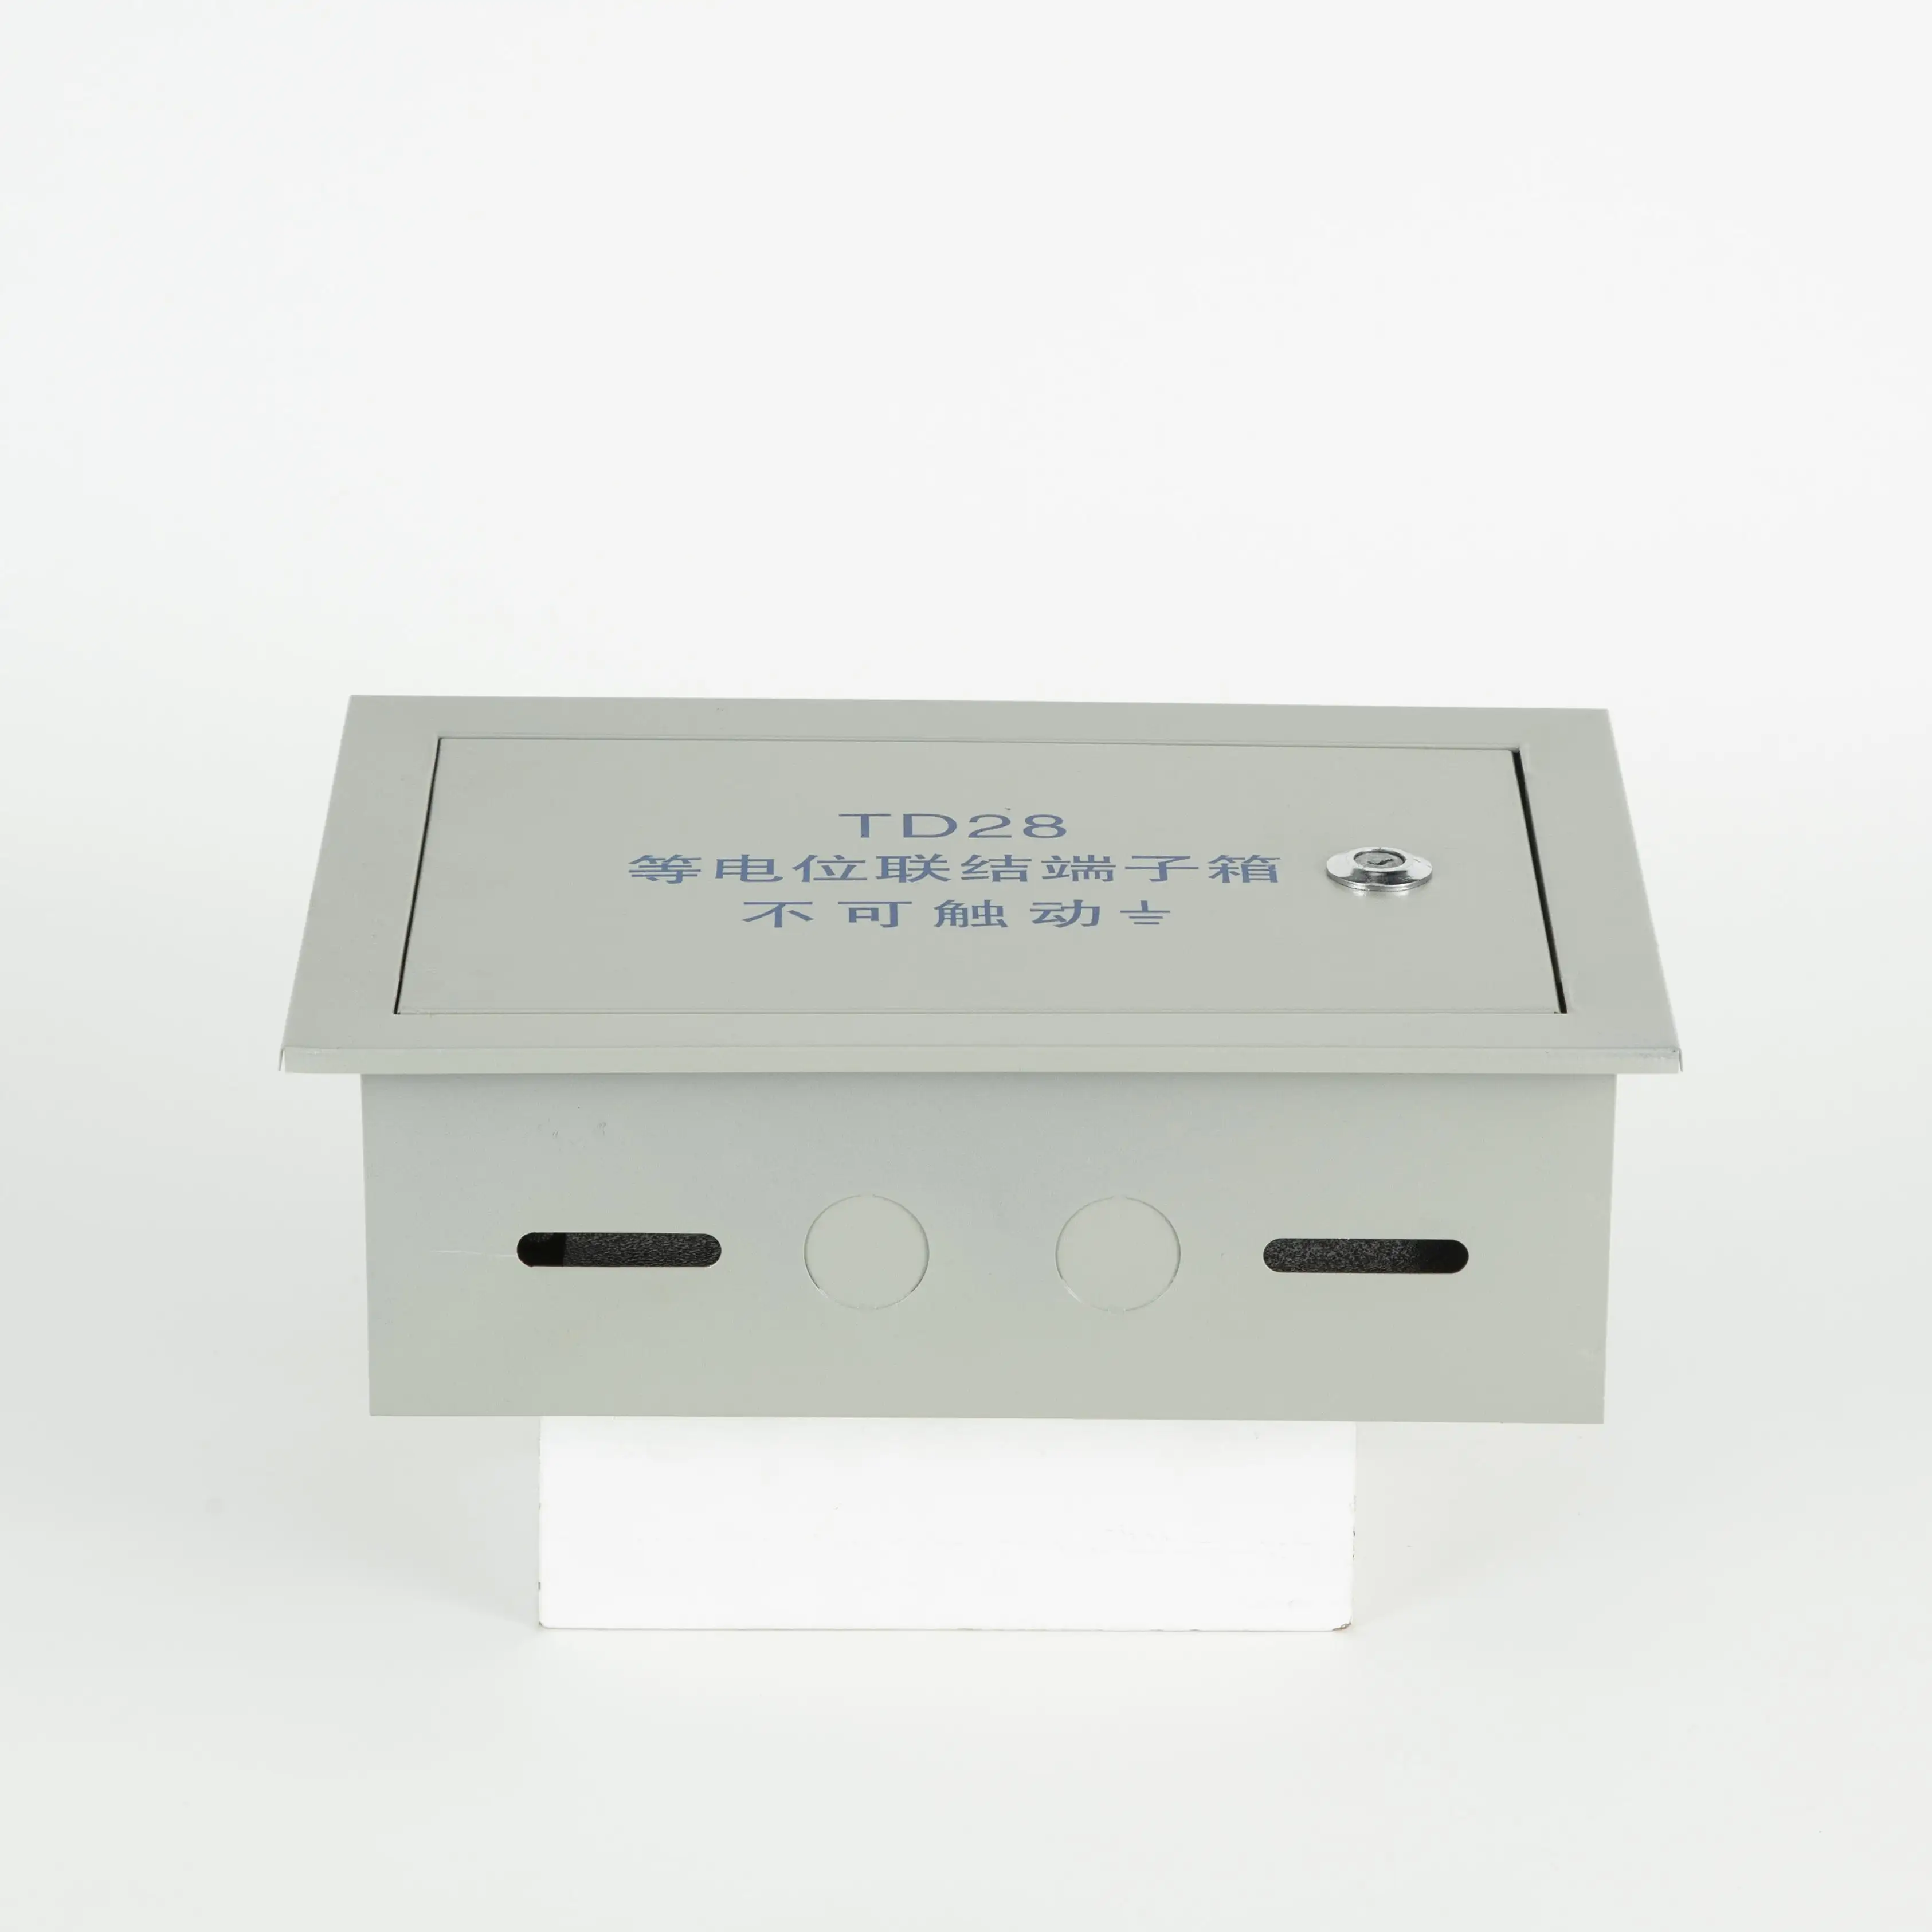 Металлический электронный корпус с ЧПУ панель управления кейс equipotential connection Клеммная распределительная коробка